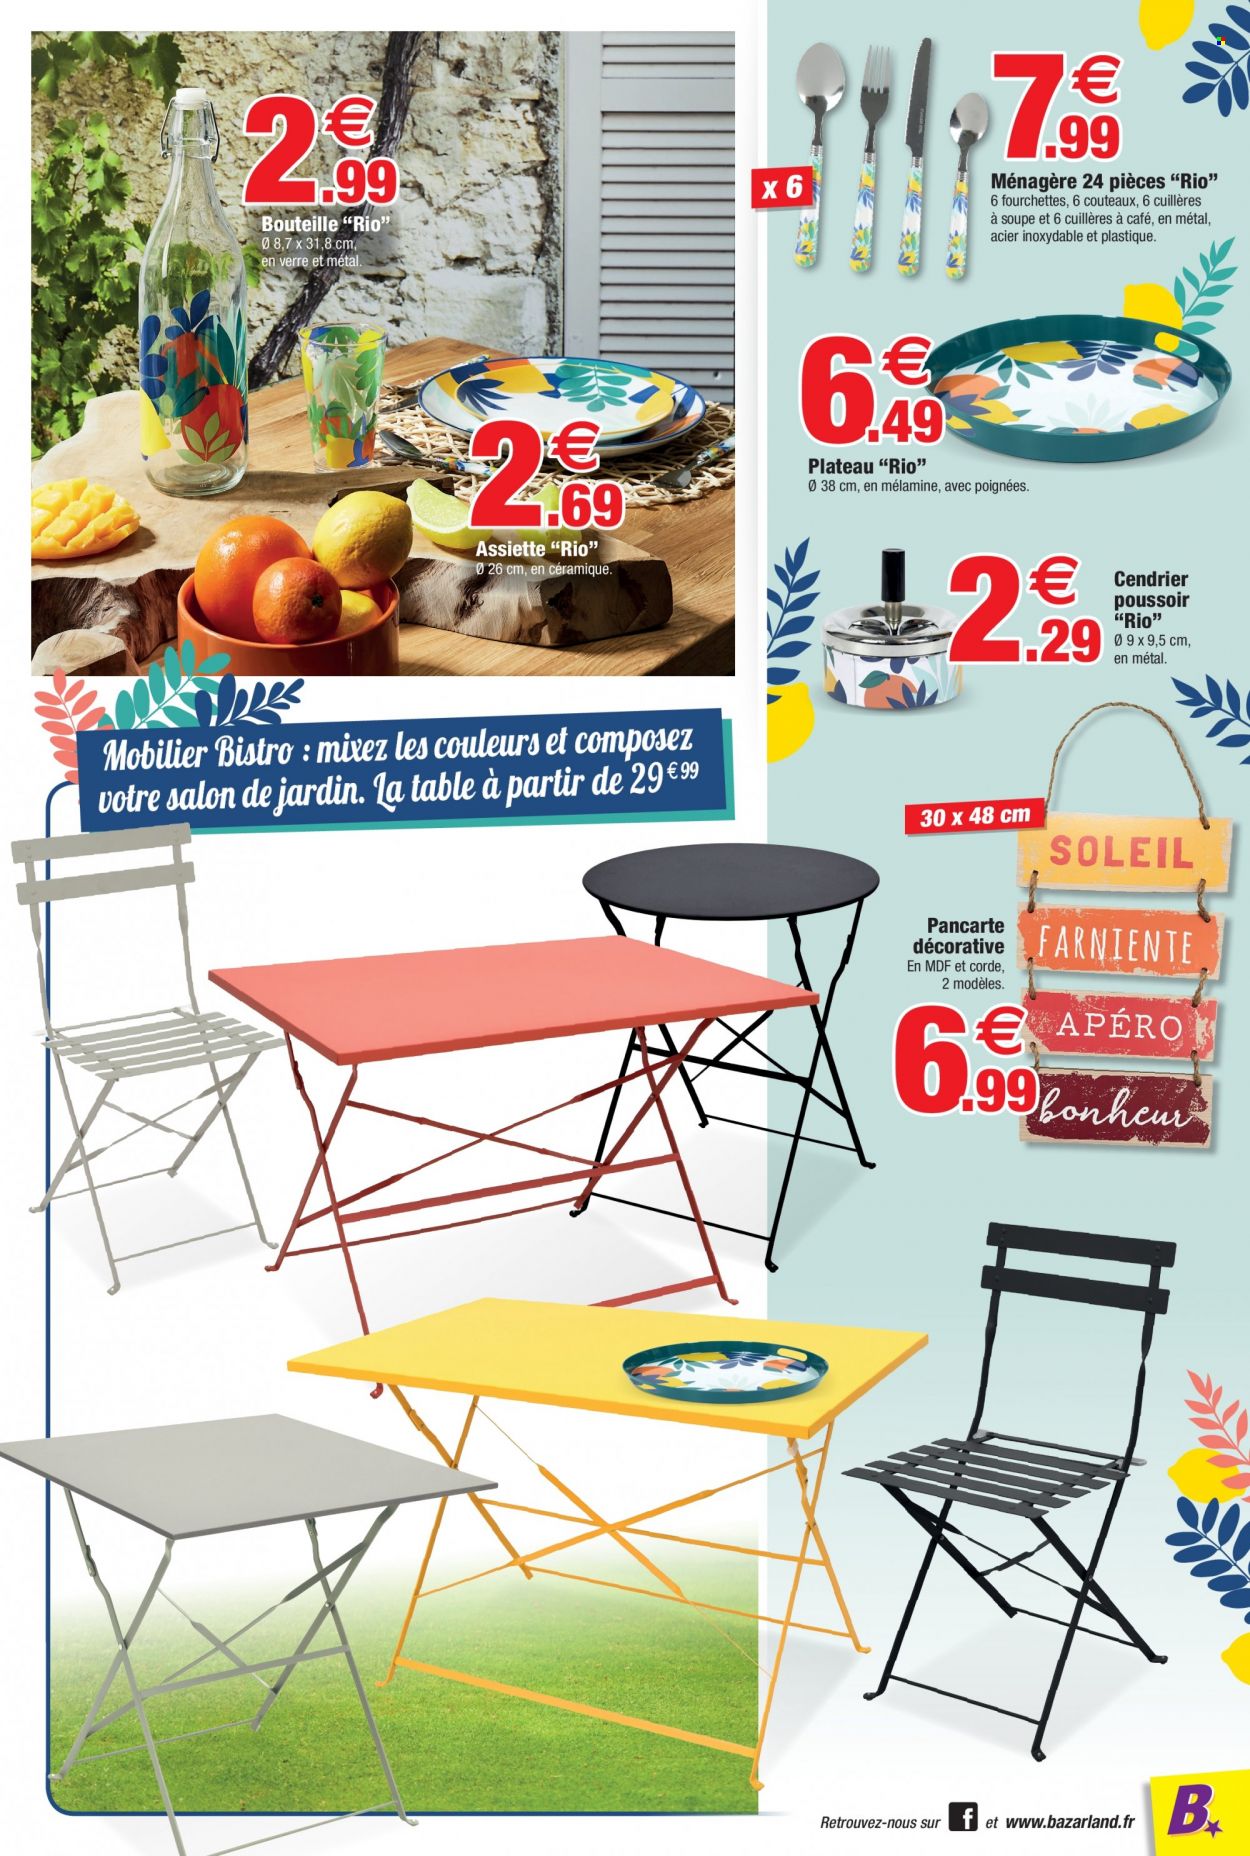 thumbnail - Catalogue Bazarland - 29/06/2022 - 10/07/2022 - Produits soldés - table, cendrier, assiette, ménagère, fourchette, salon de jardin. Page 5.